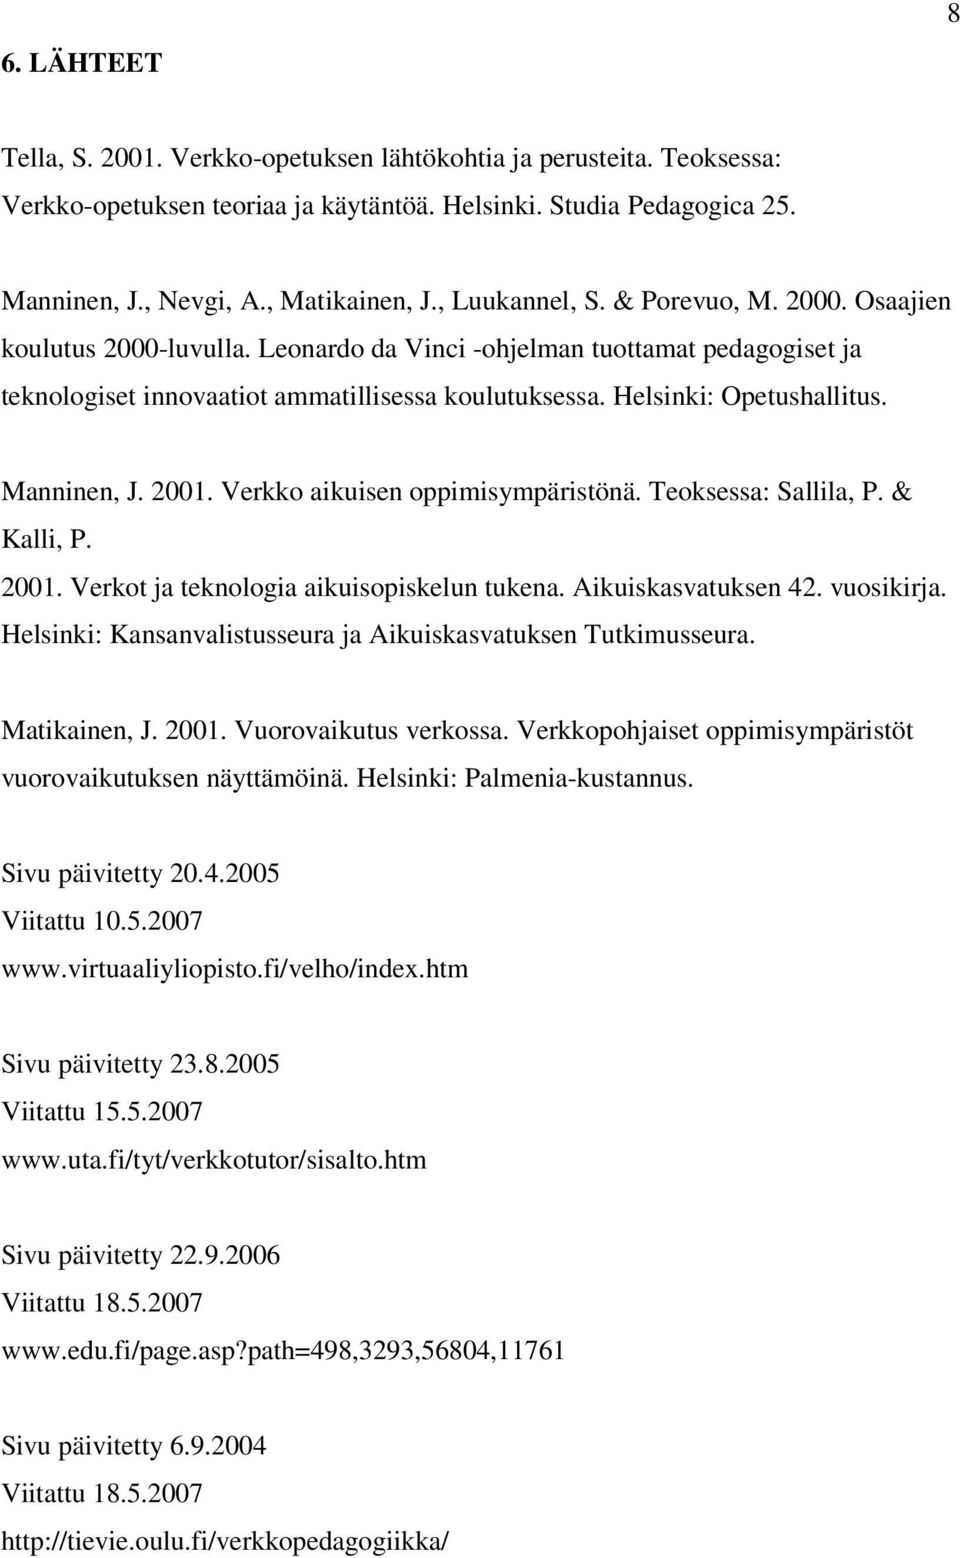 Helsinki: Opetushallitus. Manninen, J. 2001. Verkko aikuisen oppimisympäristönä. Teoksessa: Sallila, P. & Kalli, P. 2001. Verkot ja teknologia aikuisopiskelun tukena. Aikuiskasvatuksen 42. vuosikirja.